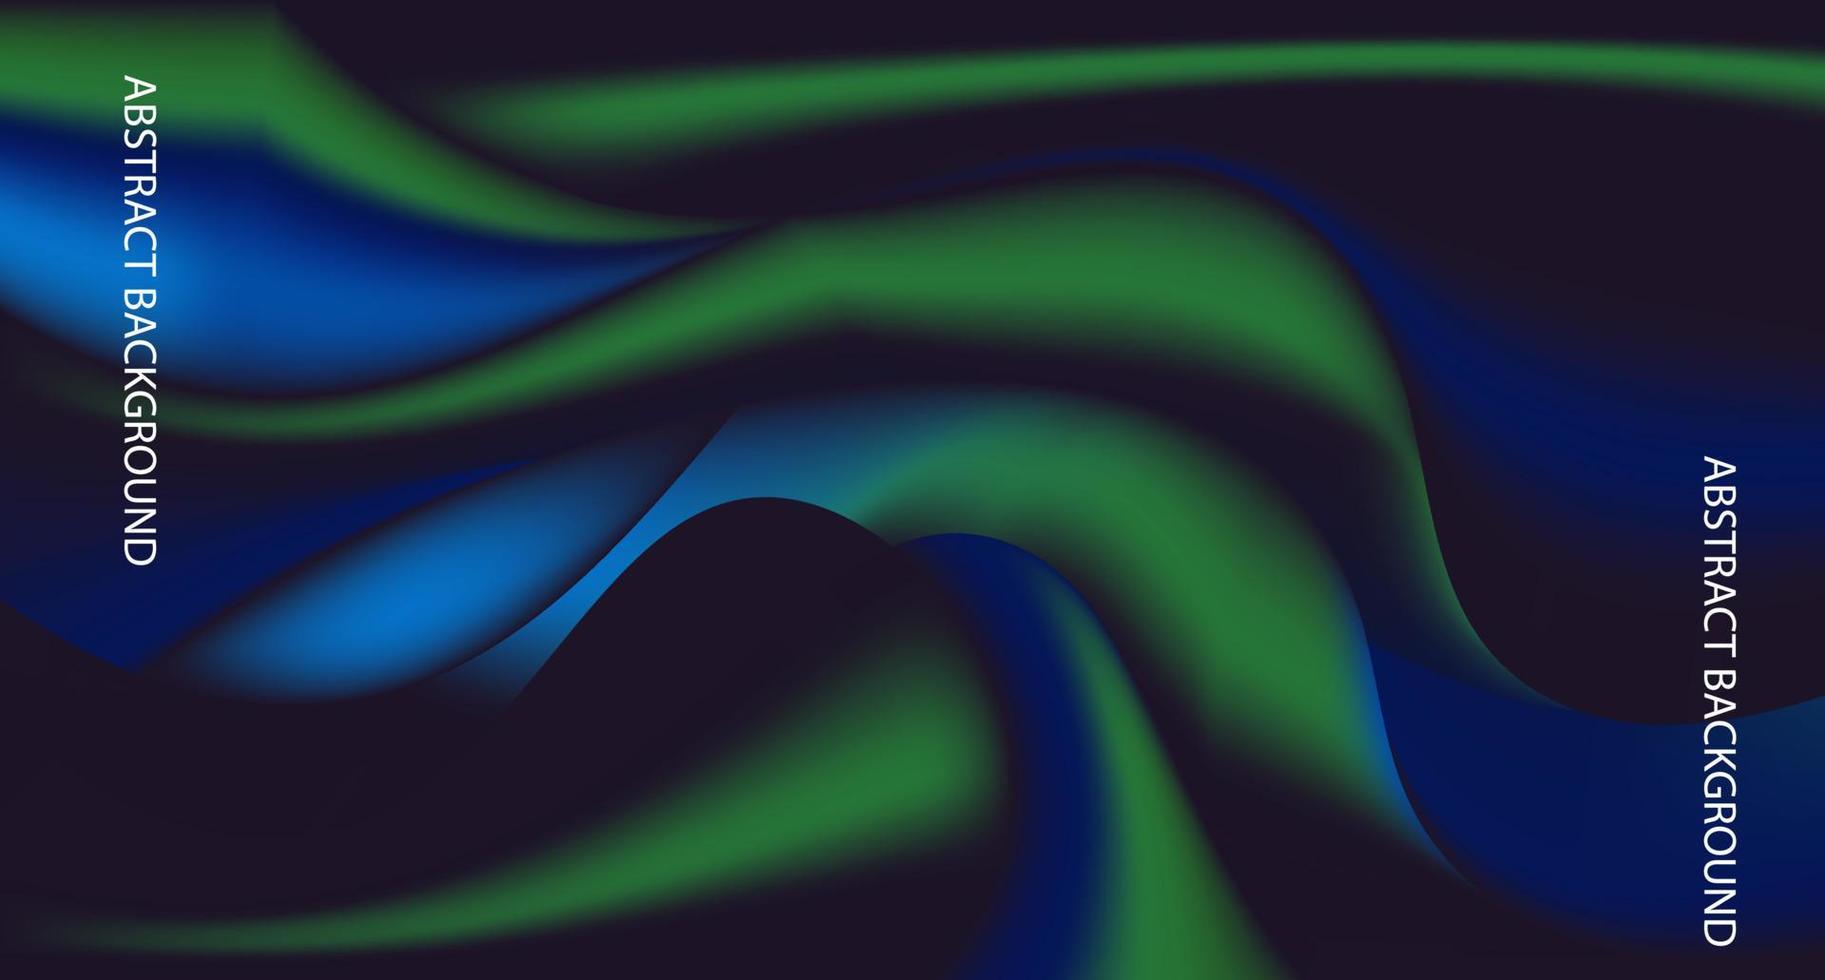 design de modelo de plano de fundo de onda azul e verde para plano de fundo do site e apresentação de negócios vetor